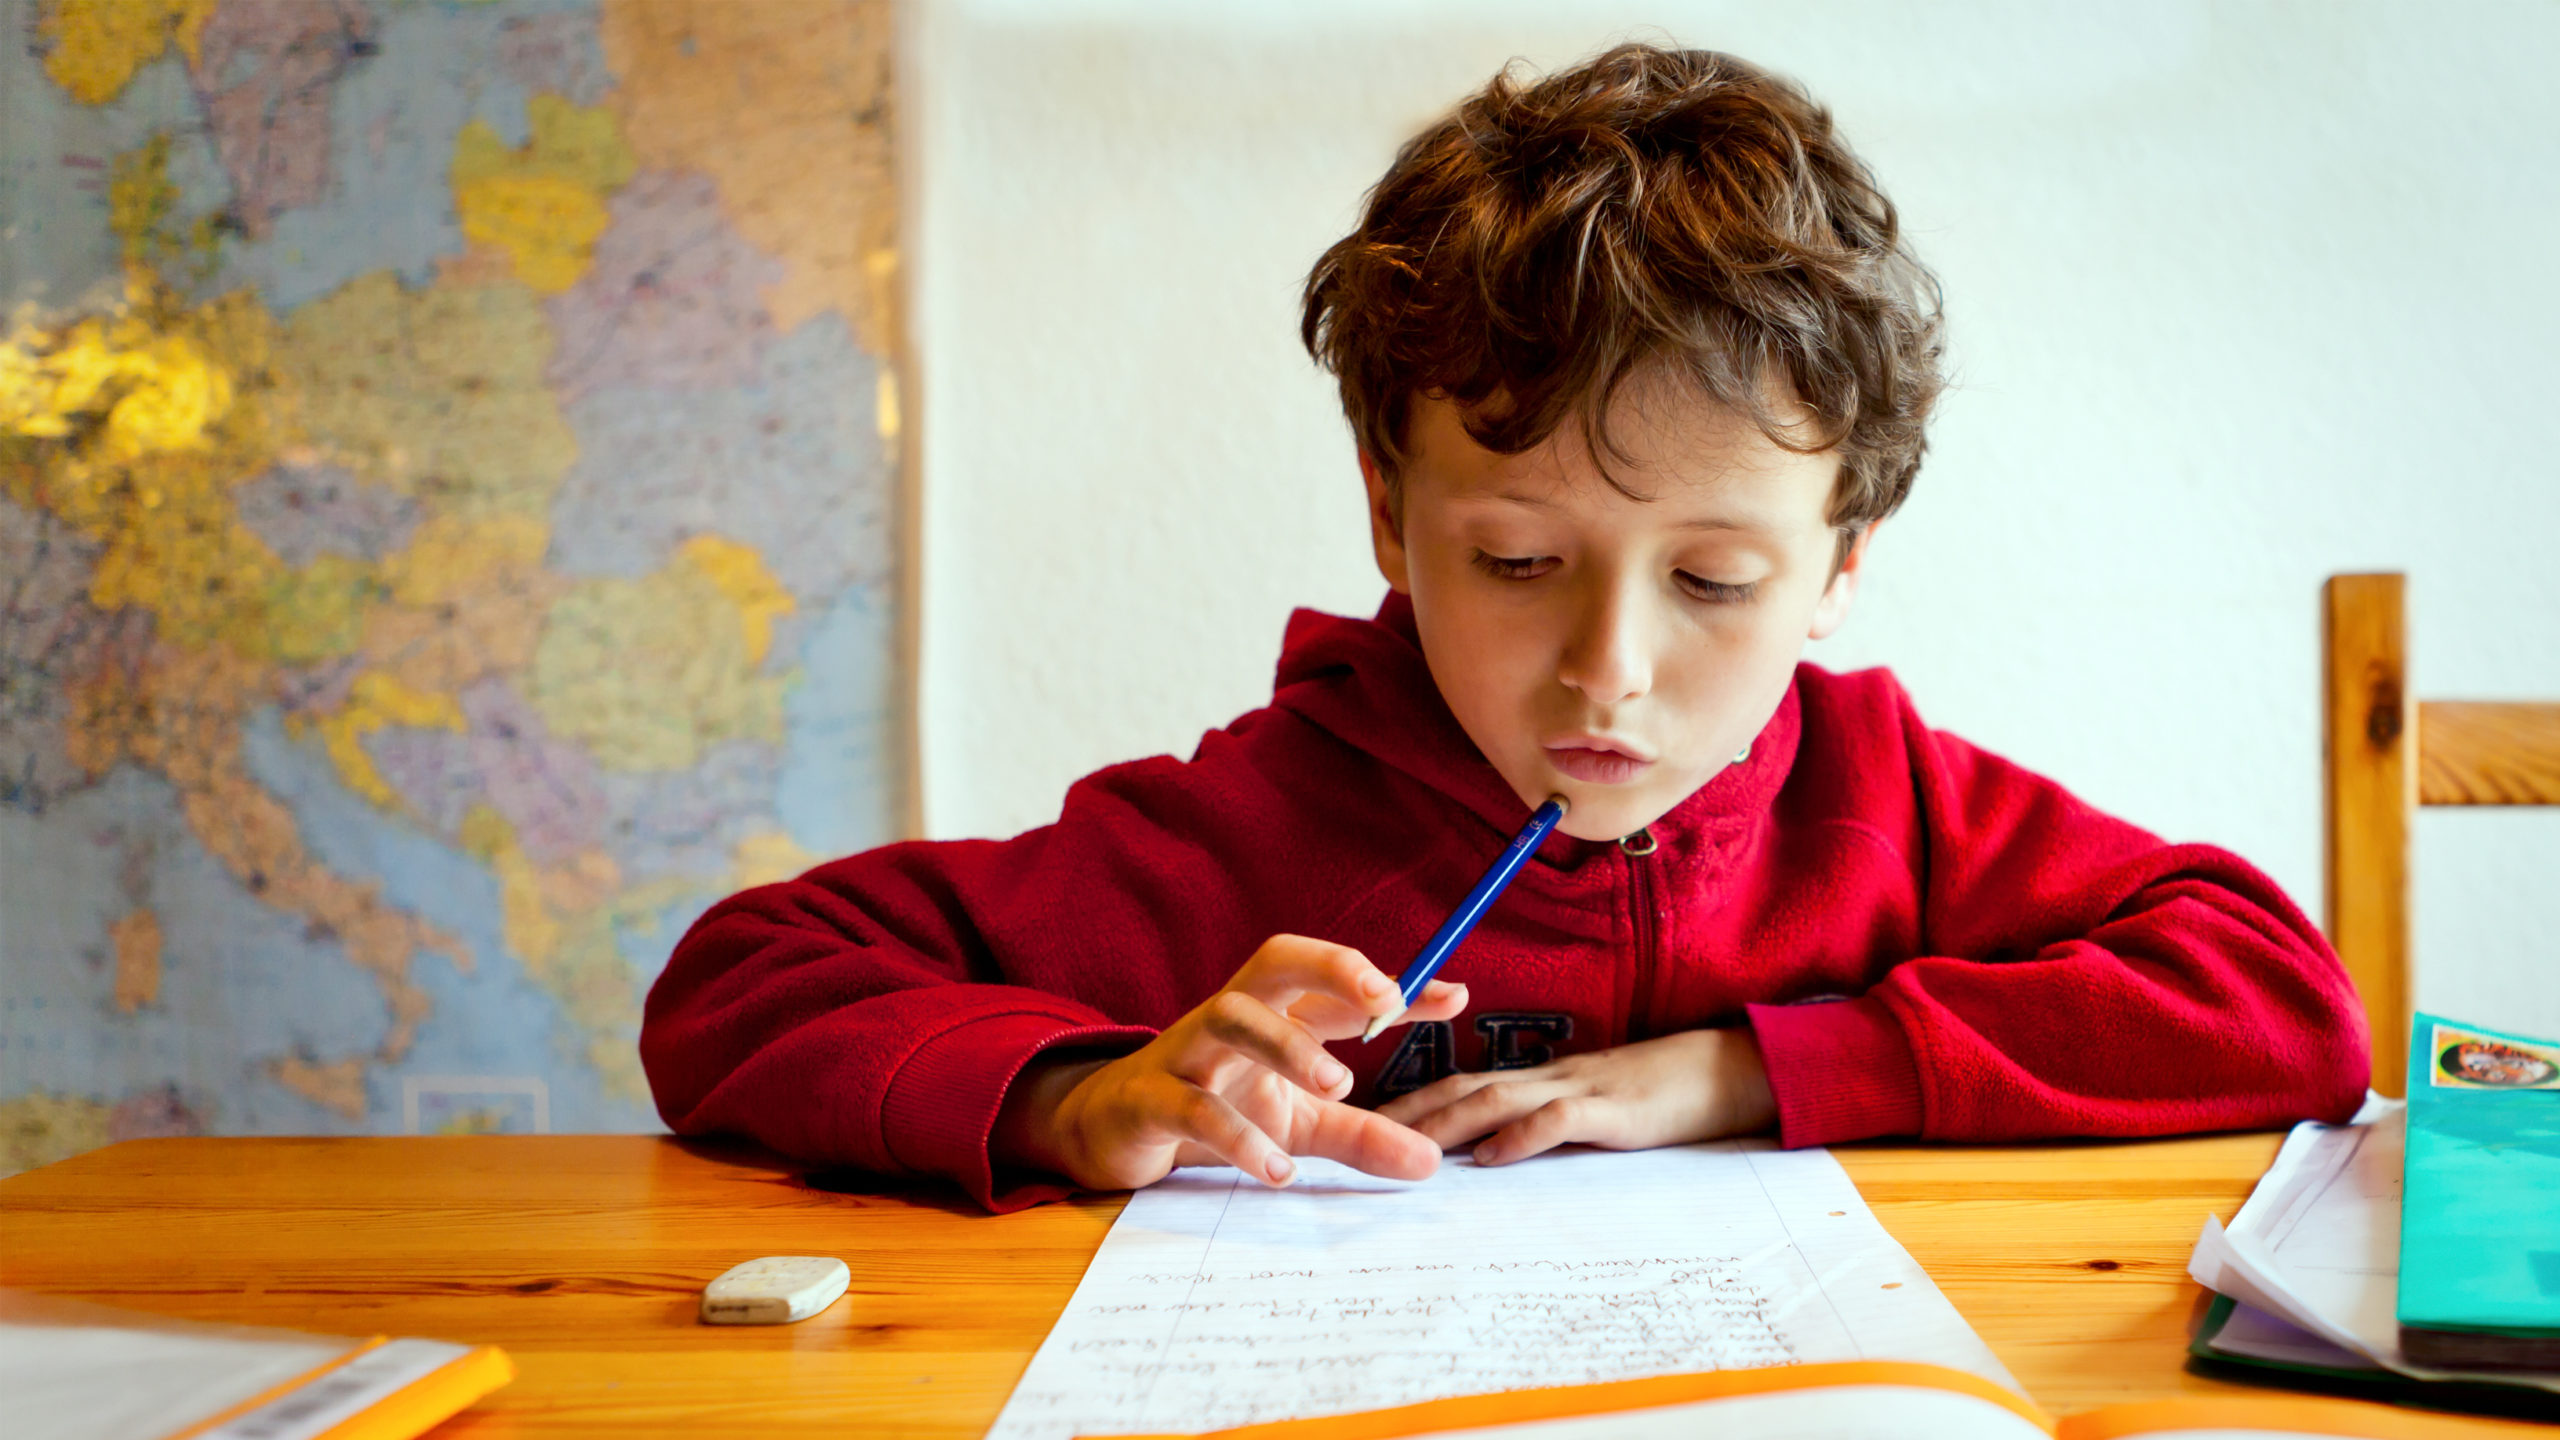 О том что можно учиться. Ученик. Дети на уроке. Ребенок выполняет домашнее задание. Выполнение домашнего задания.